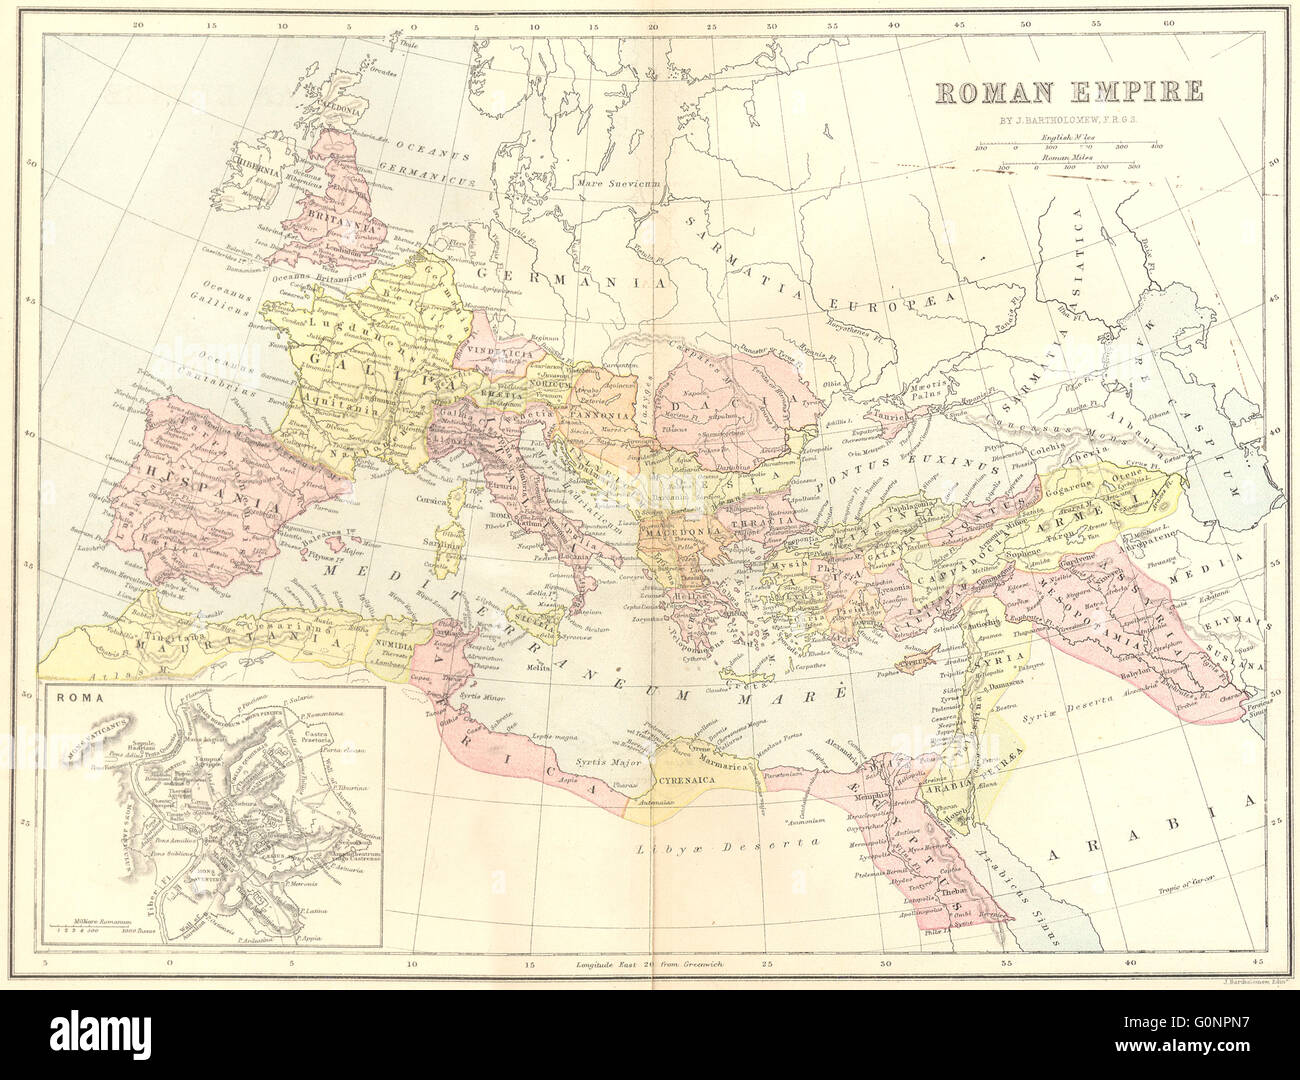 Europa: Alten römischen Reiches, 1870 Antike Landkarte Stockfoto